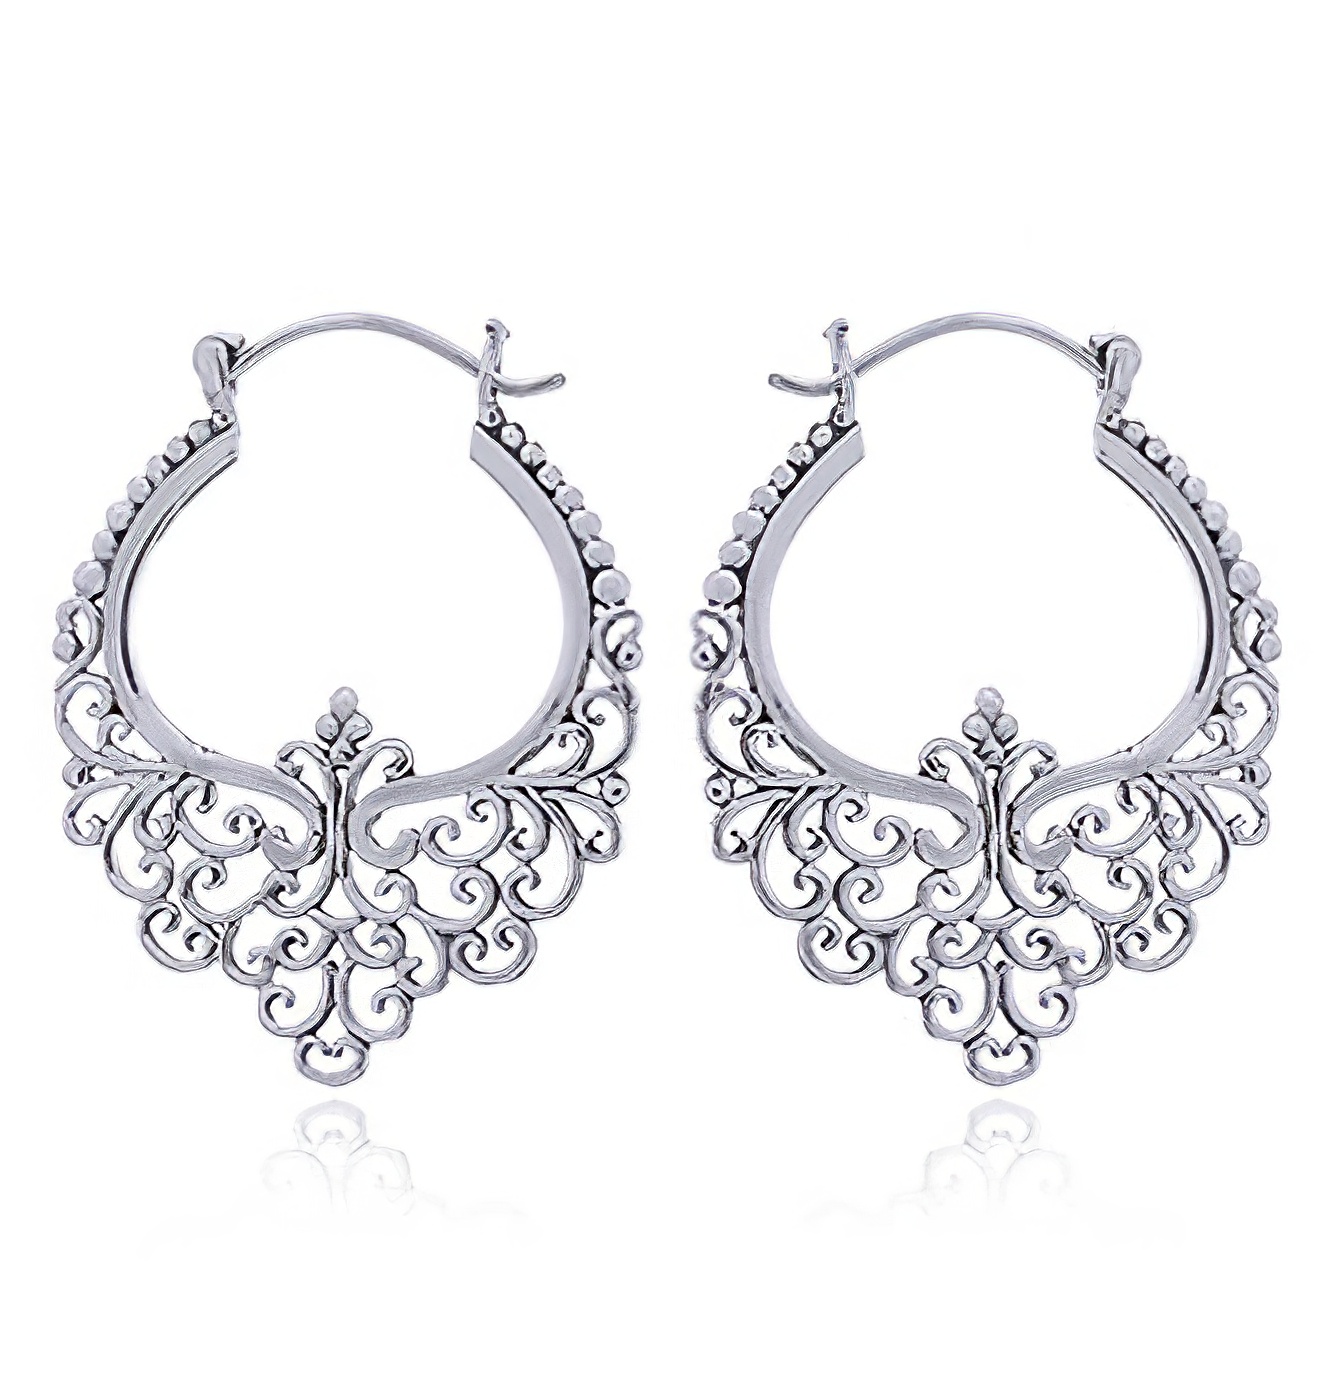 Ornamented Ajoure 925 Silver Hoop Earrings by BeYindi 